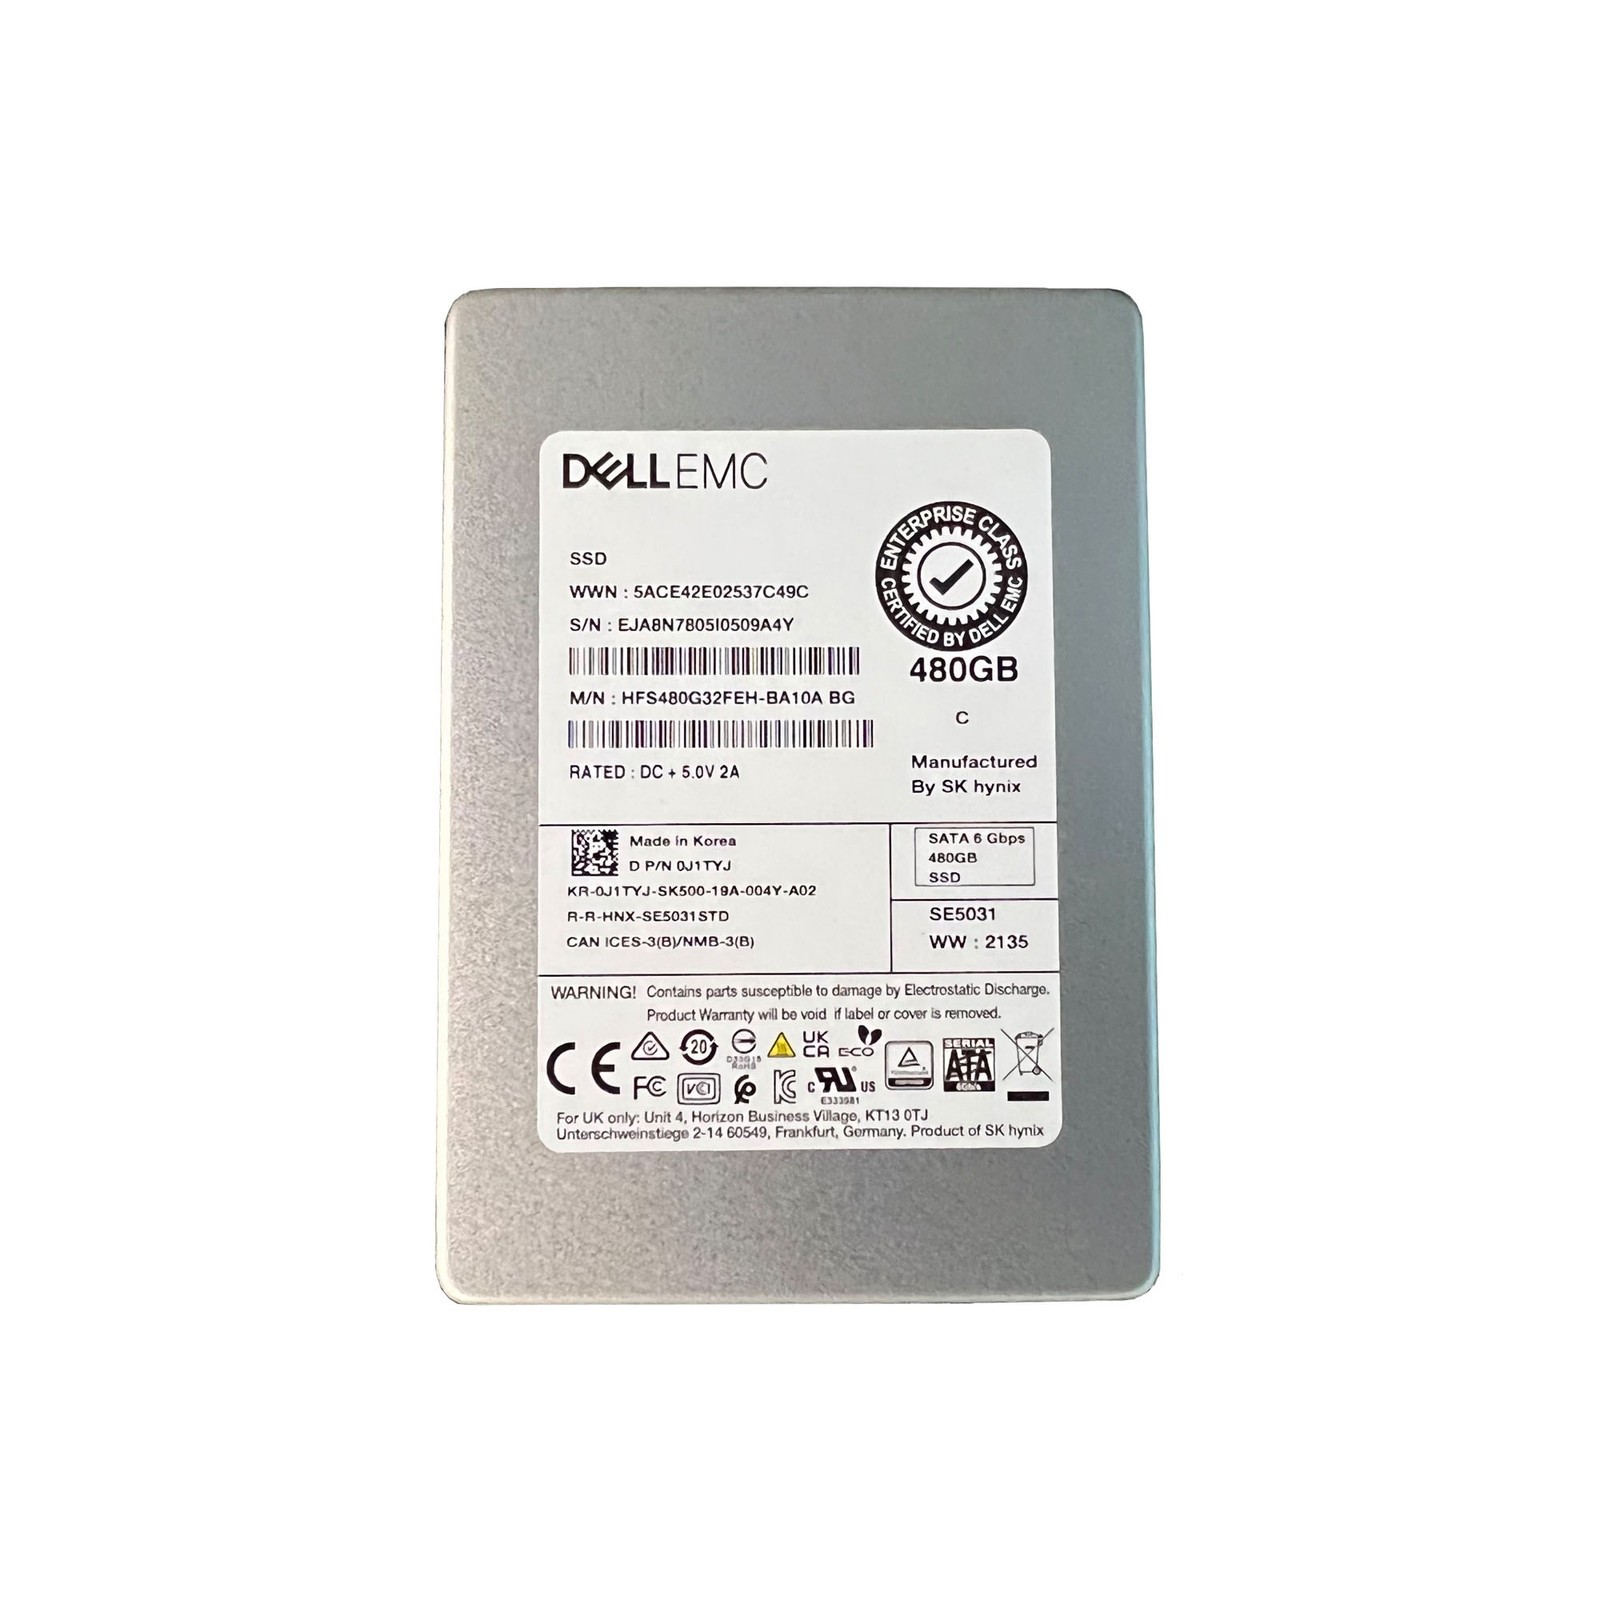 Dell (J1TYJ) - 480GB Enterprise Class (SFF 2.5in) SATA-III 6G SSD